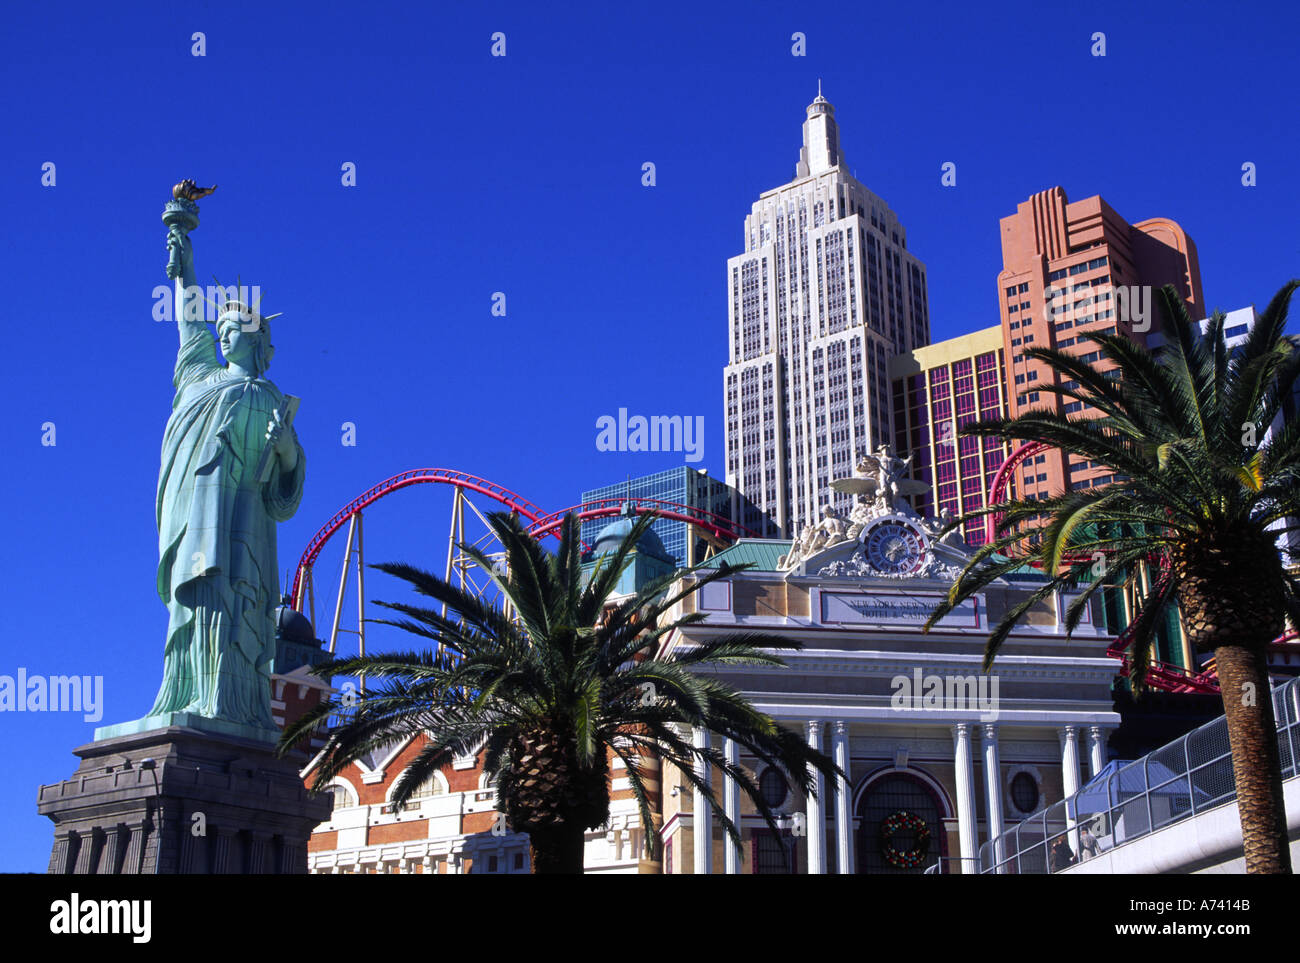 New York New York Las Vegas Nevada USA Stock Photo